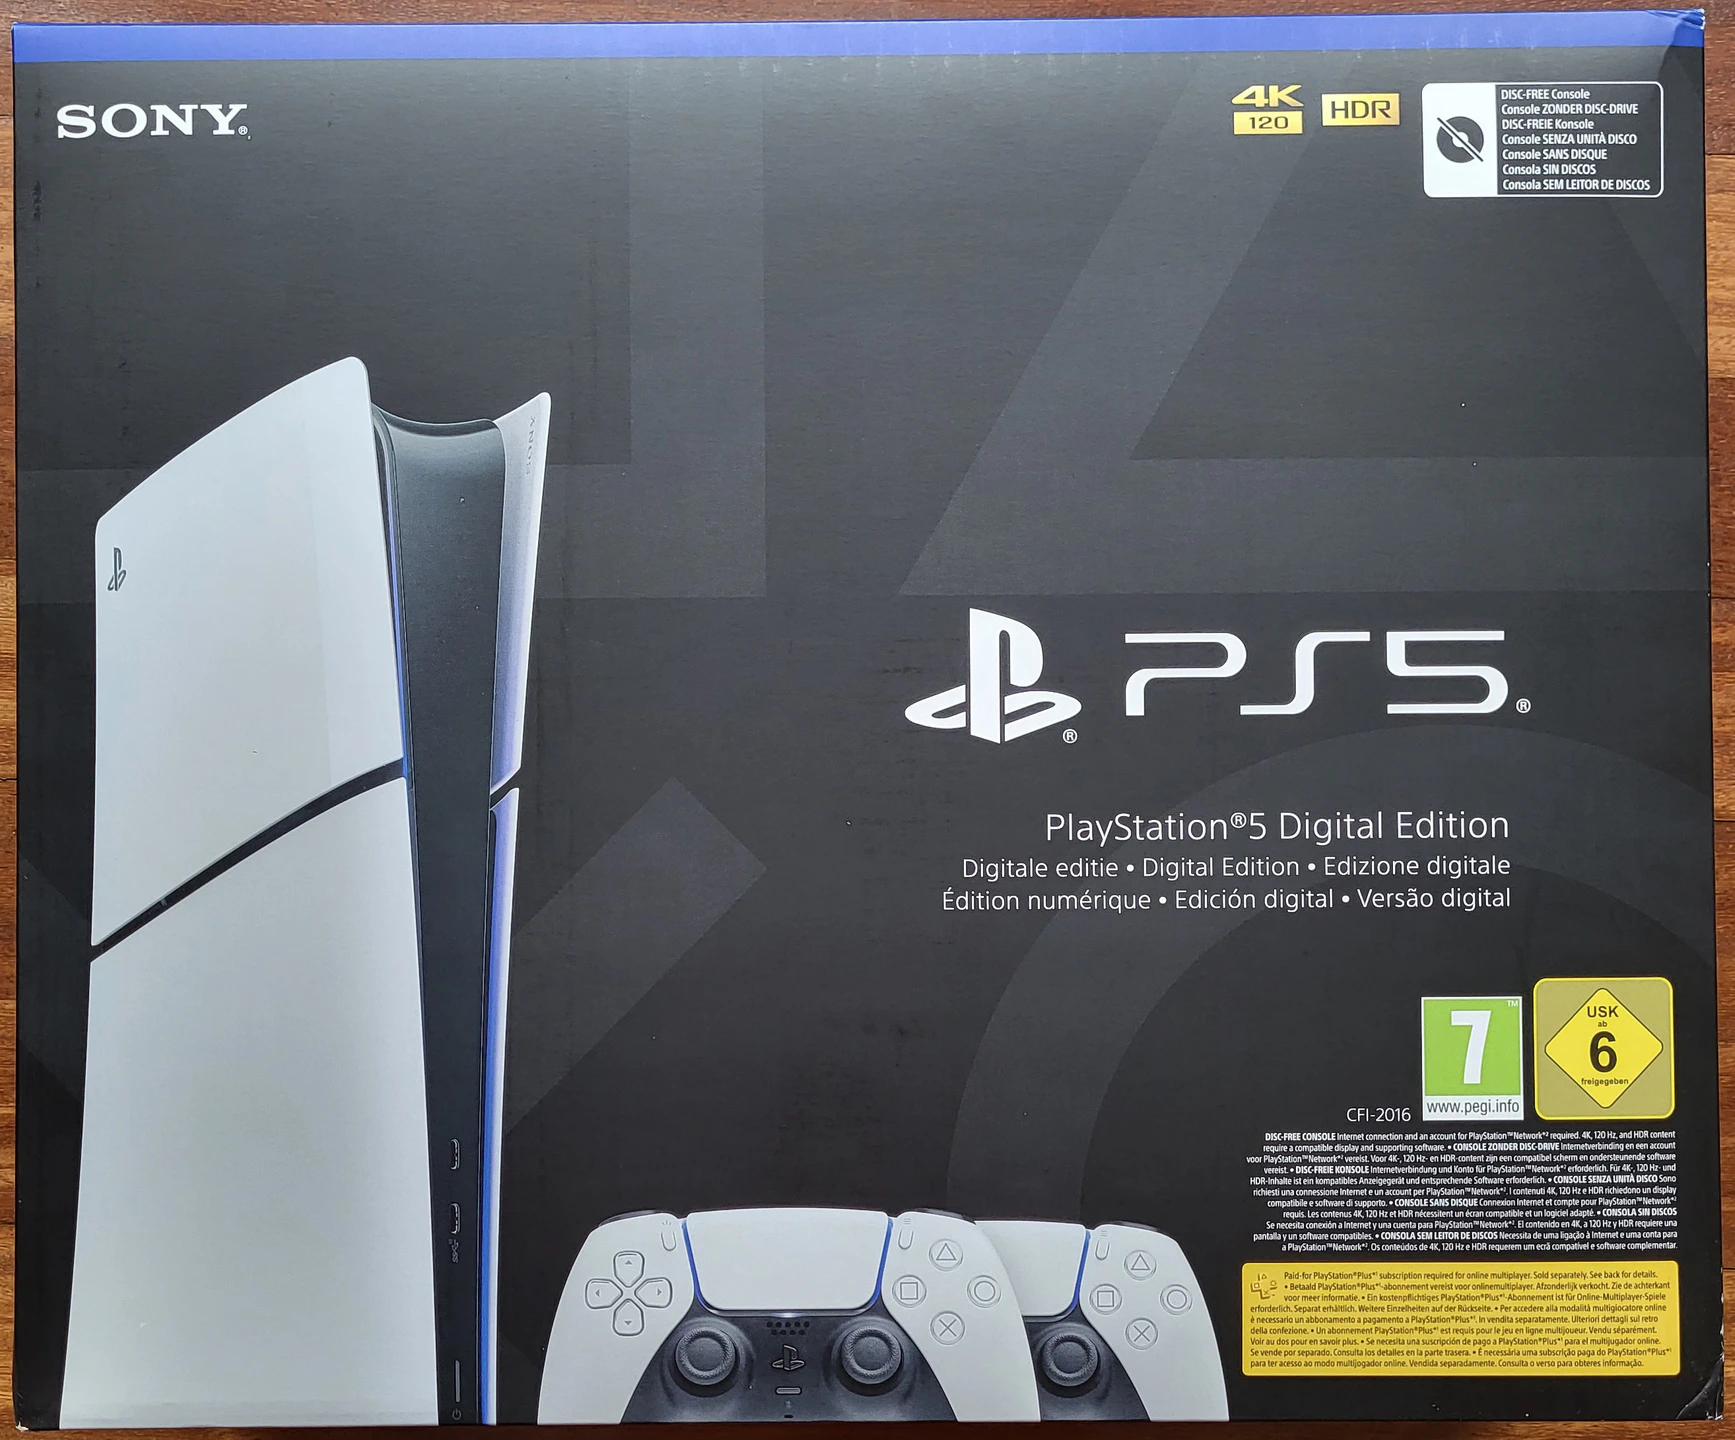 Desempaquetado de consola PlayStation 5 slim digital